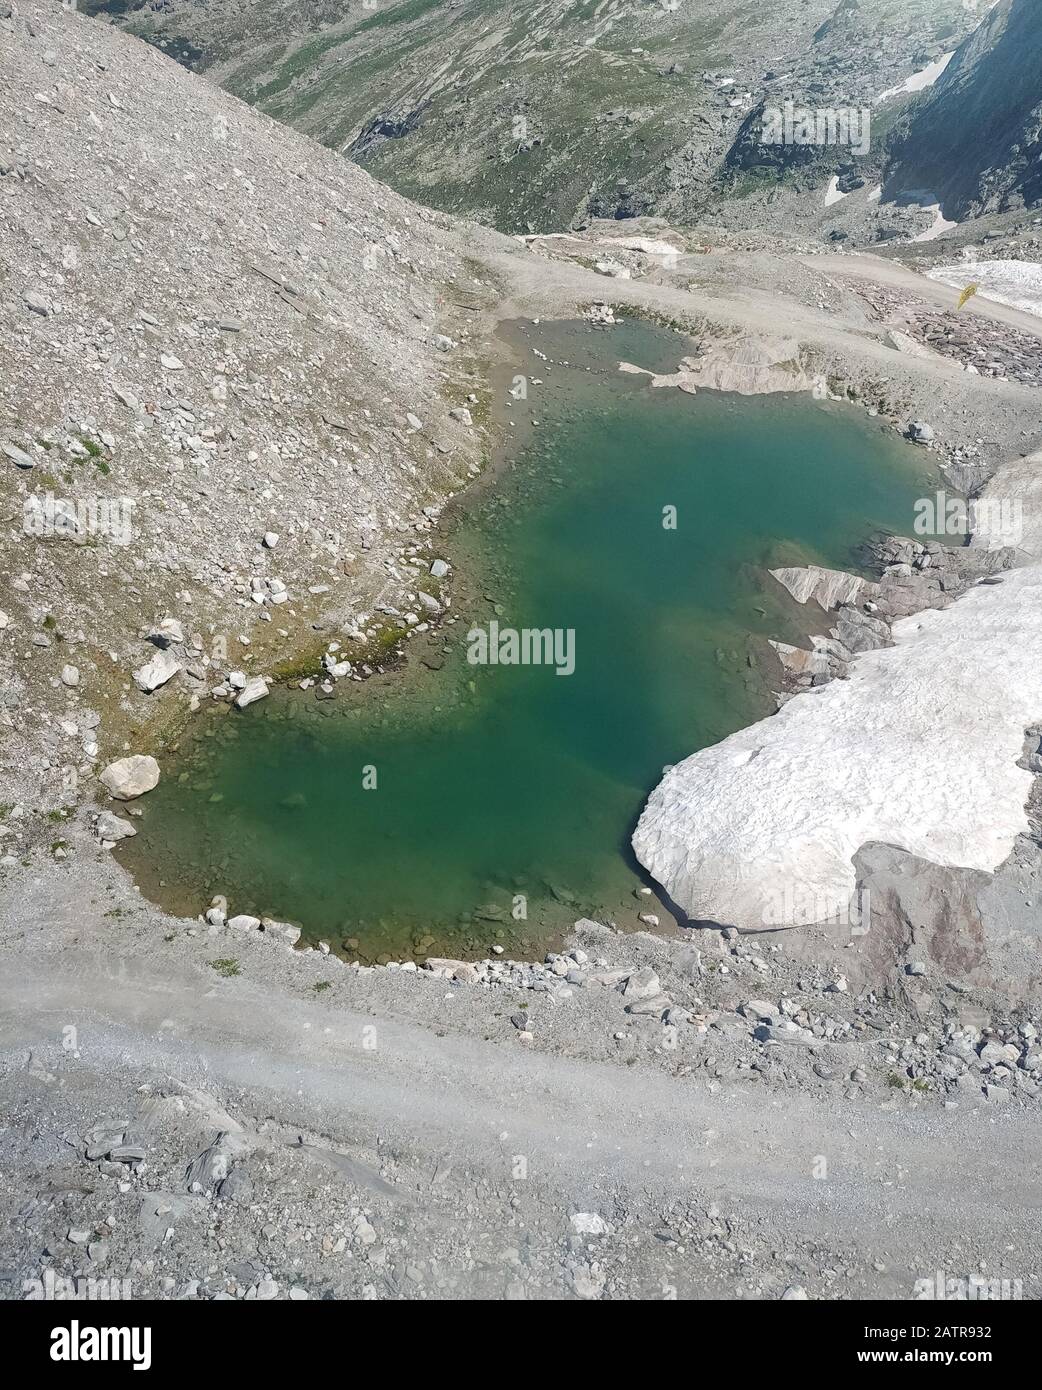 Petit lac vert émeraude de montagne dans les Alpes, causé par la fonte de neige et de glace Banque D'Images